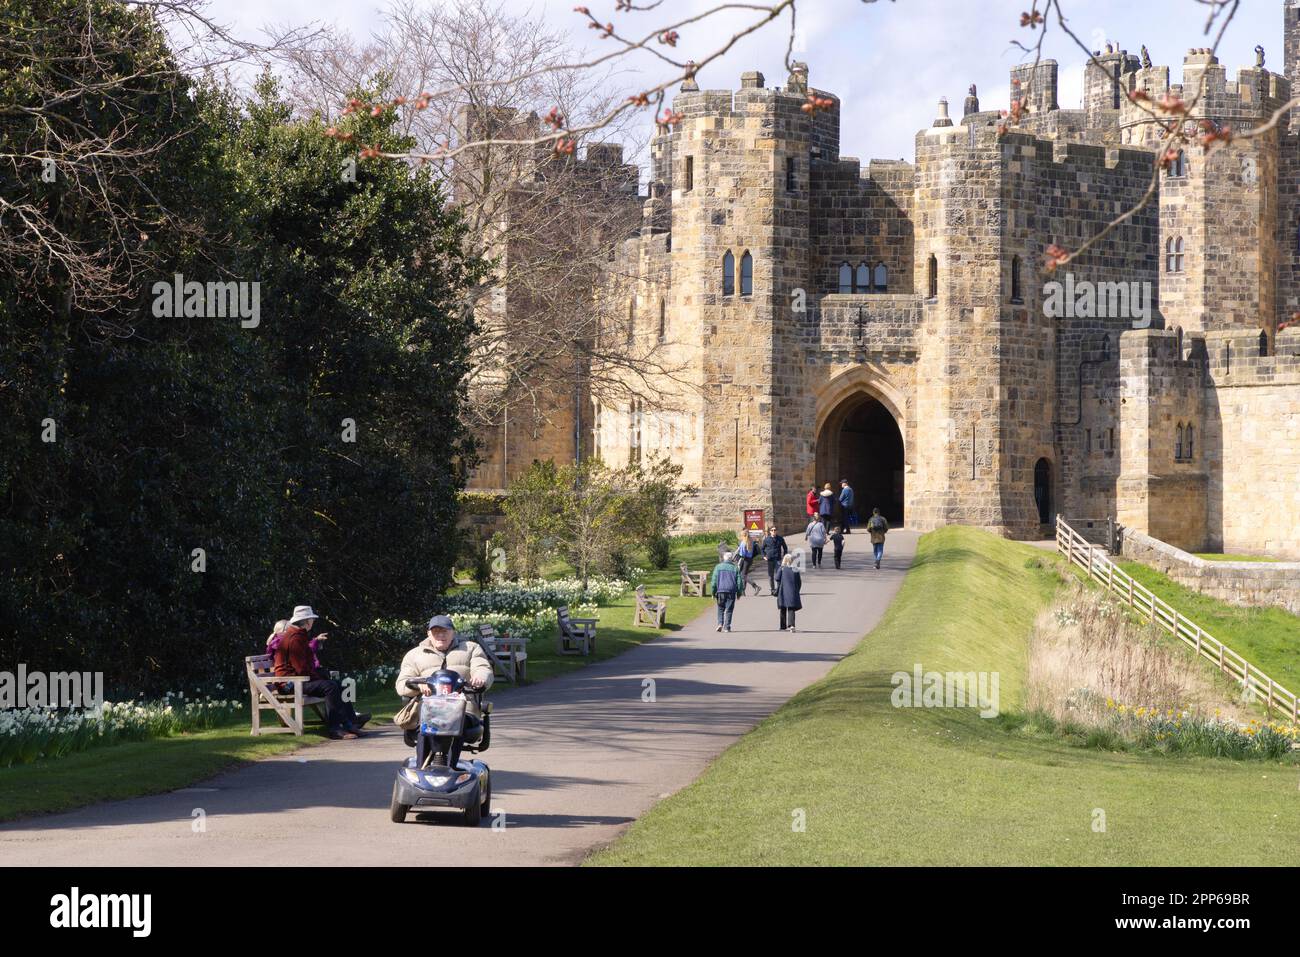 Ingresso al castello di Alnwick; con accesso per scooter per disabili; visitatori nei giardini del castello in una soleggiata giornata primaverile; Alnwick Northumberland Inghilterra Regno Unito Foto Stock